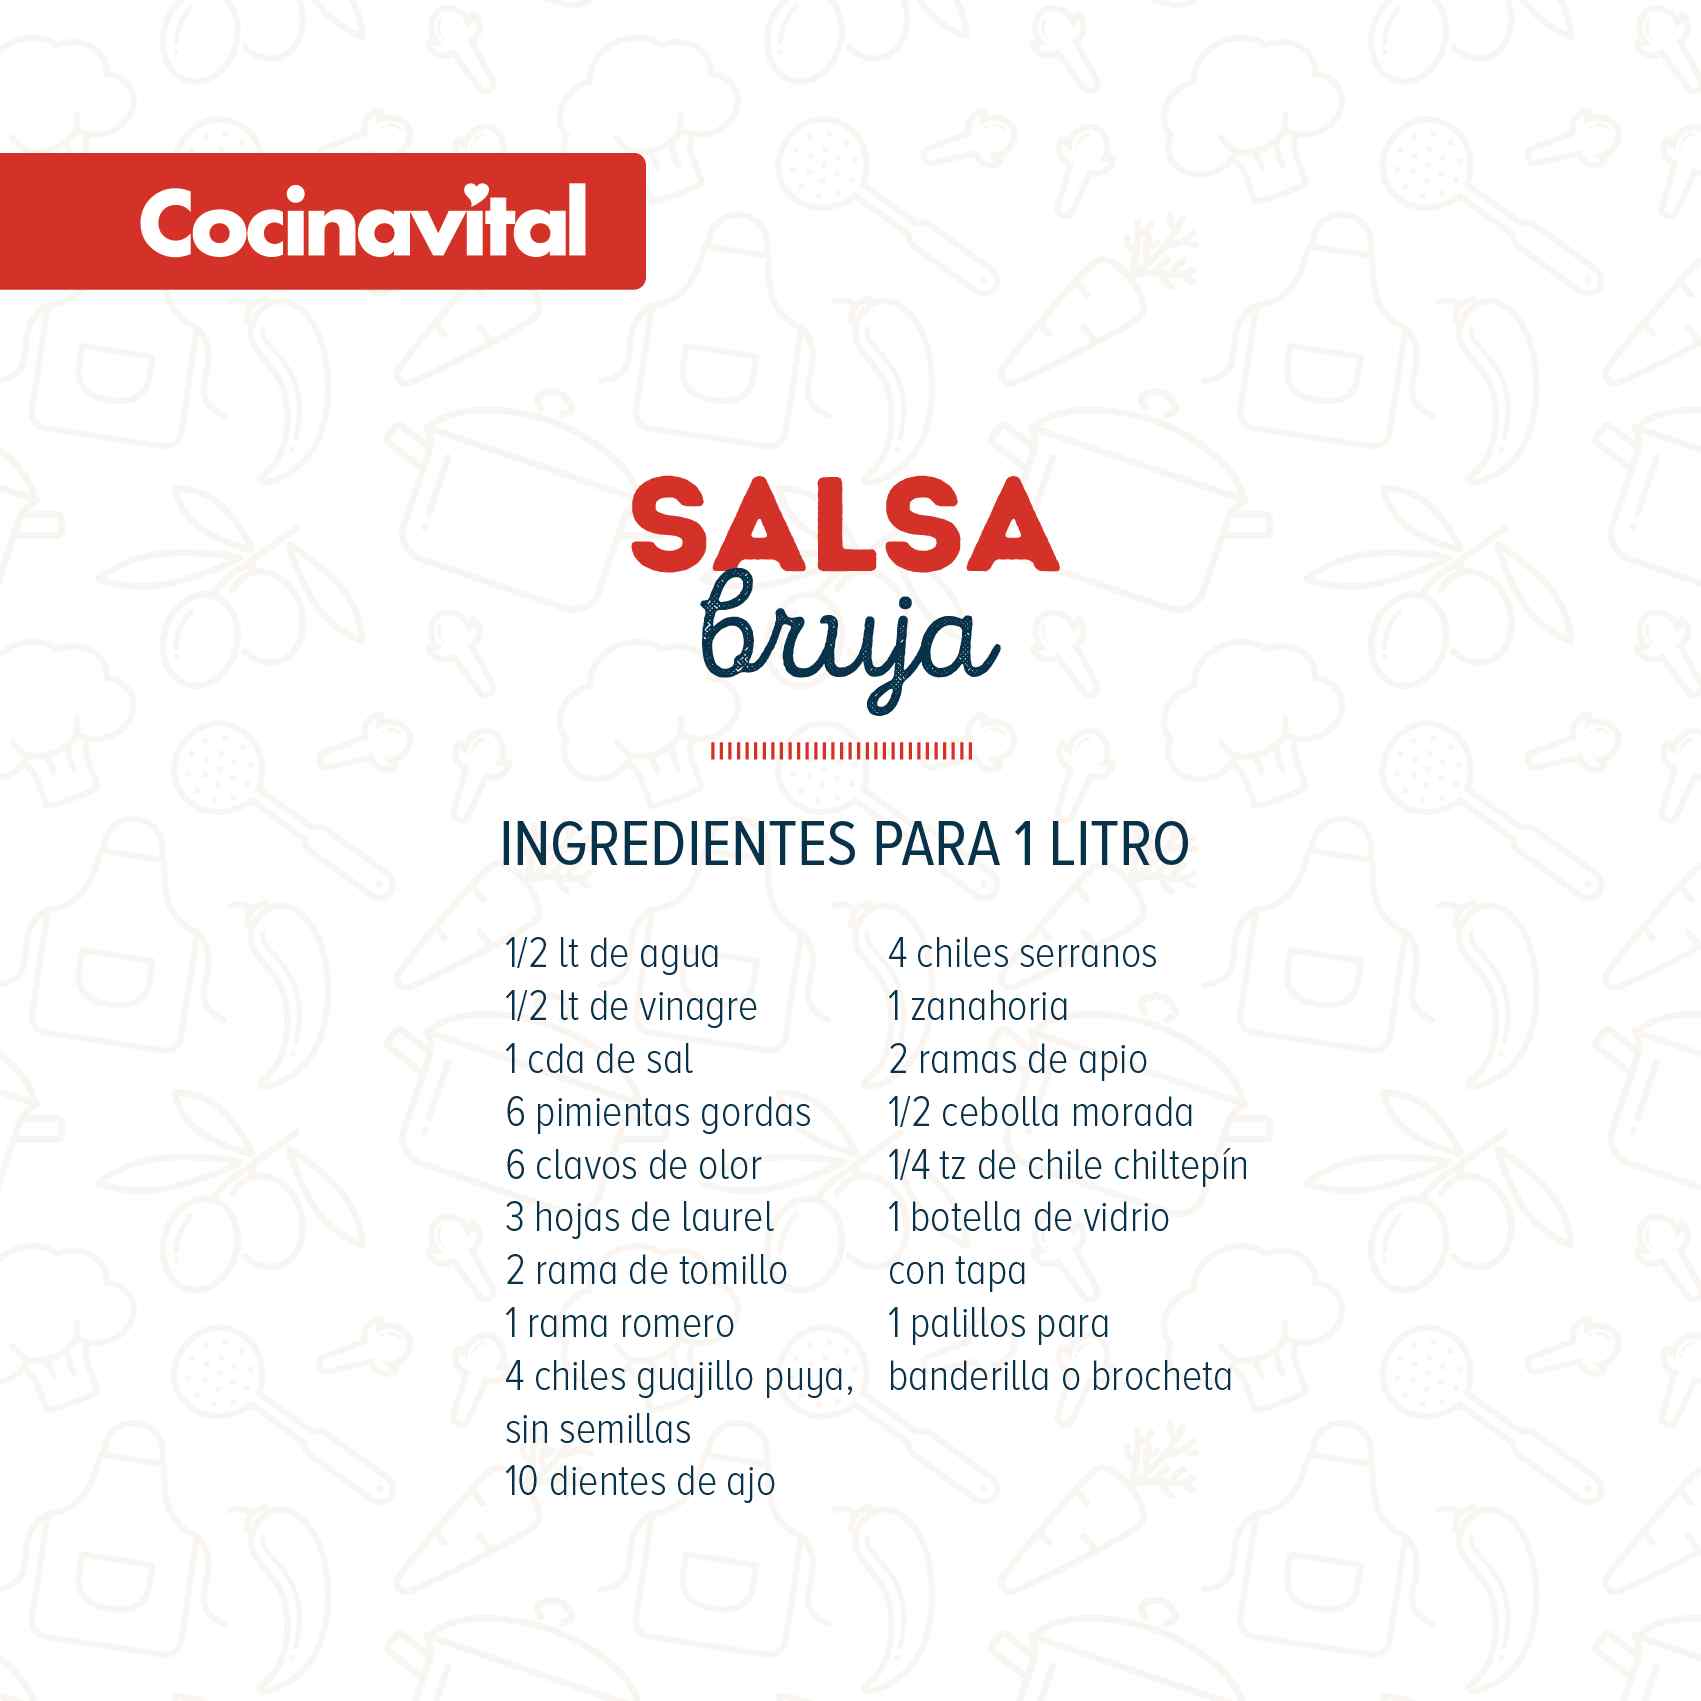 Ingredientes Salsa bruja